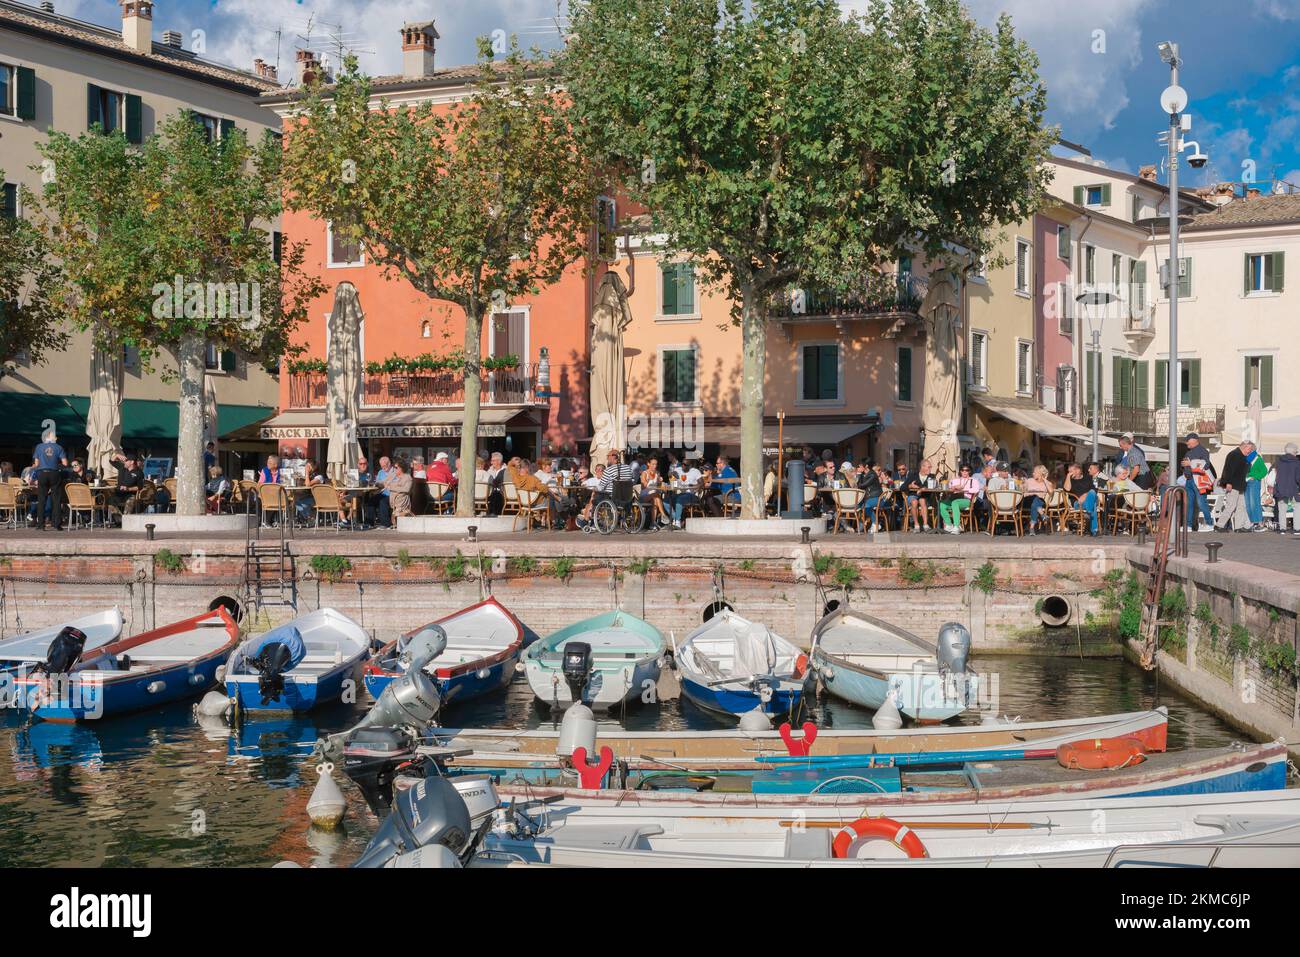 Lac de Garde, vue en été des personnes assis à l'extérieur des cafés et des bars de la Piazza Catullo dans la vieille ville de Garda, en Italie Banque D'Images